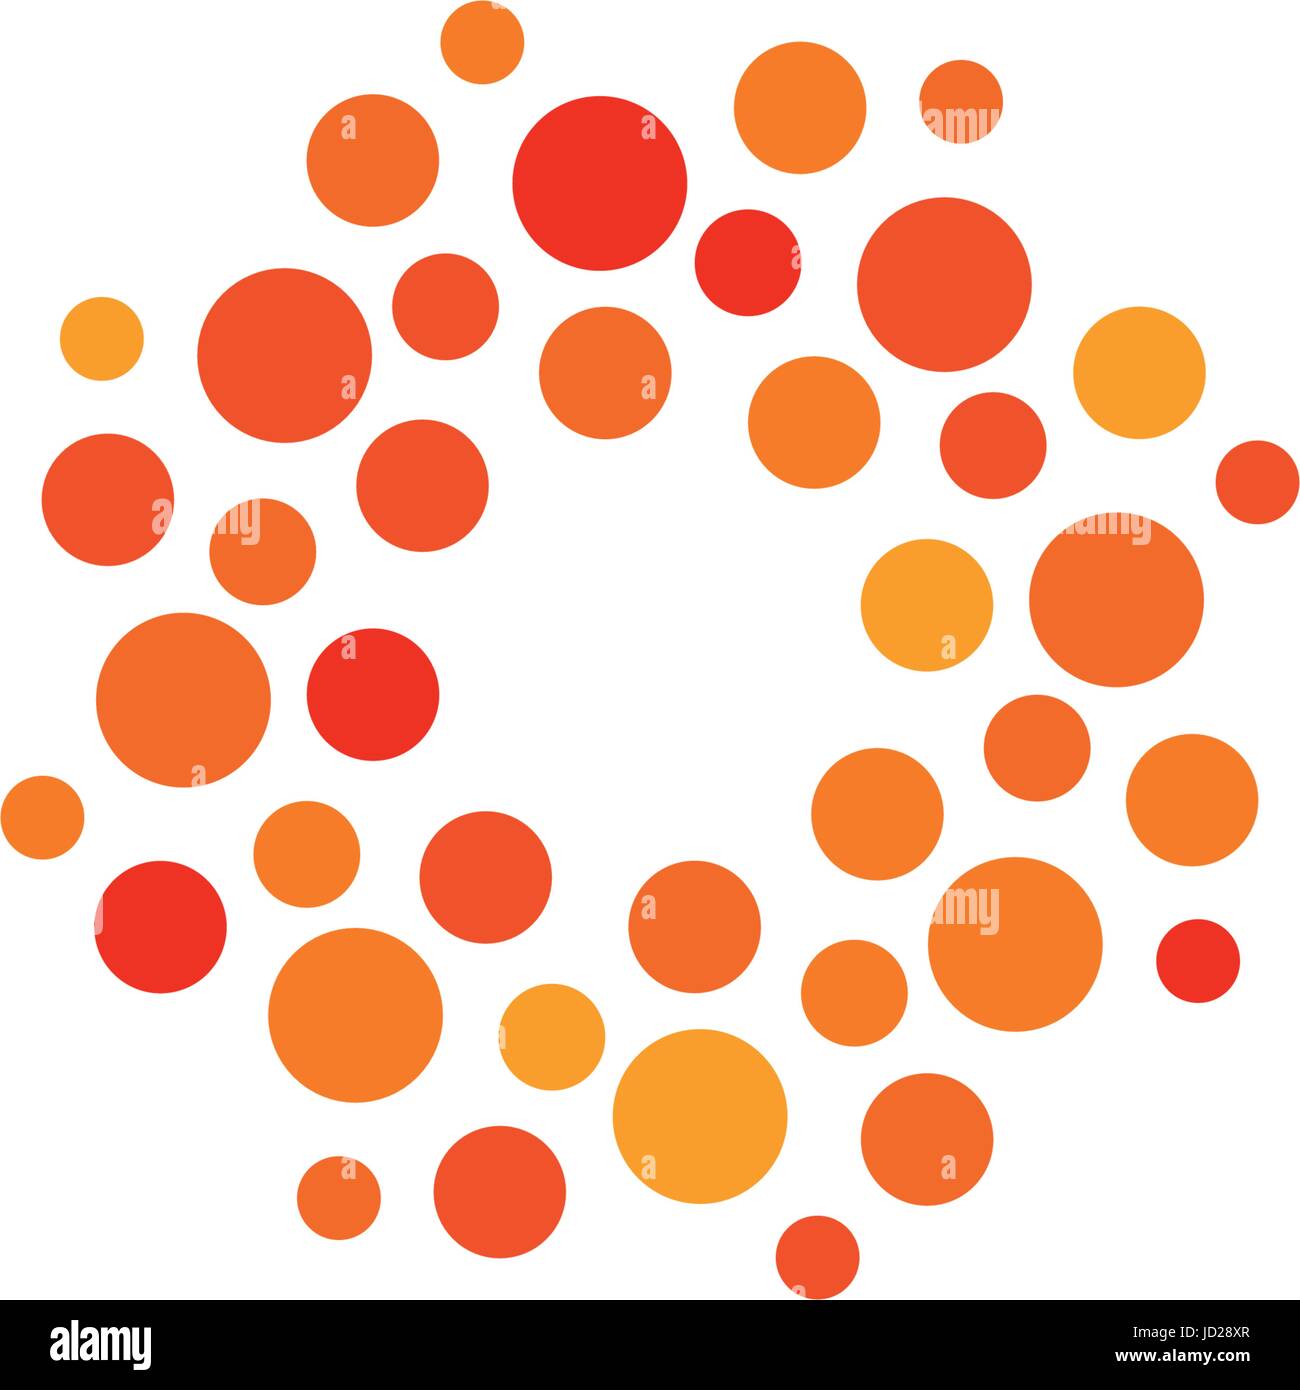 Isolierte abstrakte Runde Form Orange und Rot Farbe Logo, gepunktete stilisierte Sonne Logo auf weißem Hintergrund-Vektor-Illustration. Stock Vektor